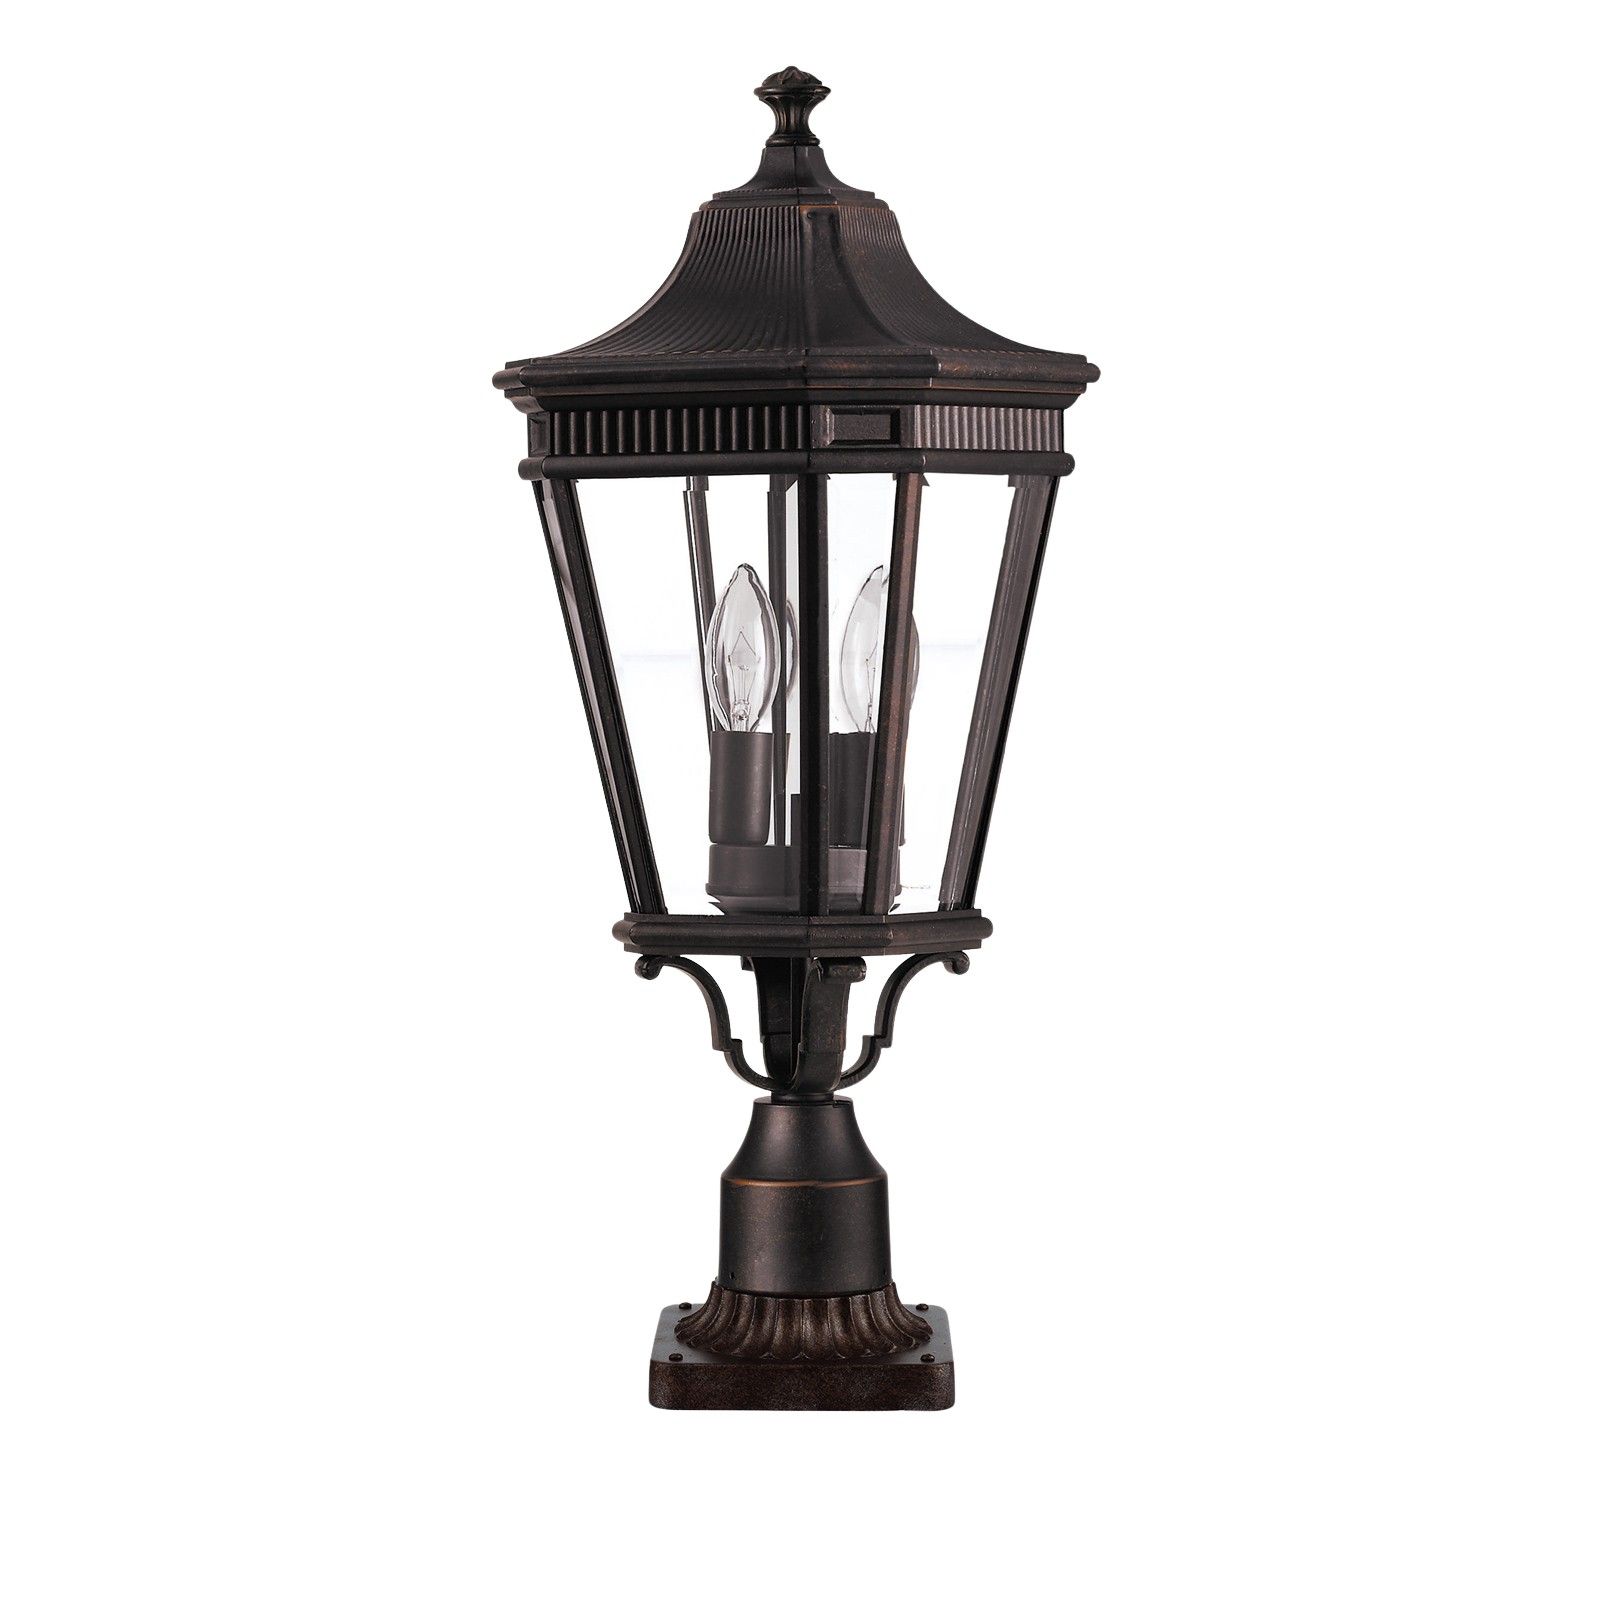 Cotswold medium pedestal lantern in Bronze